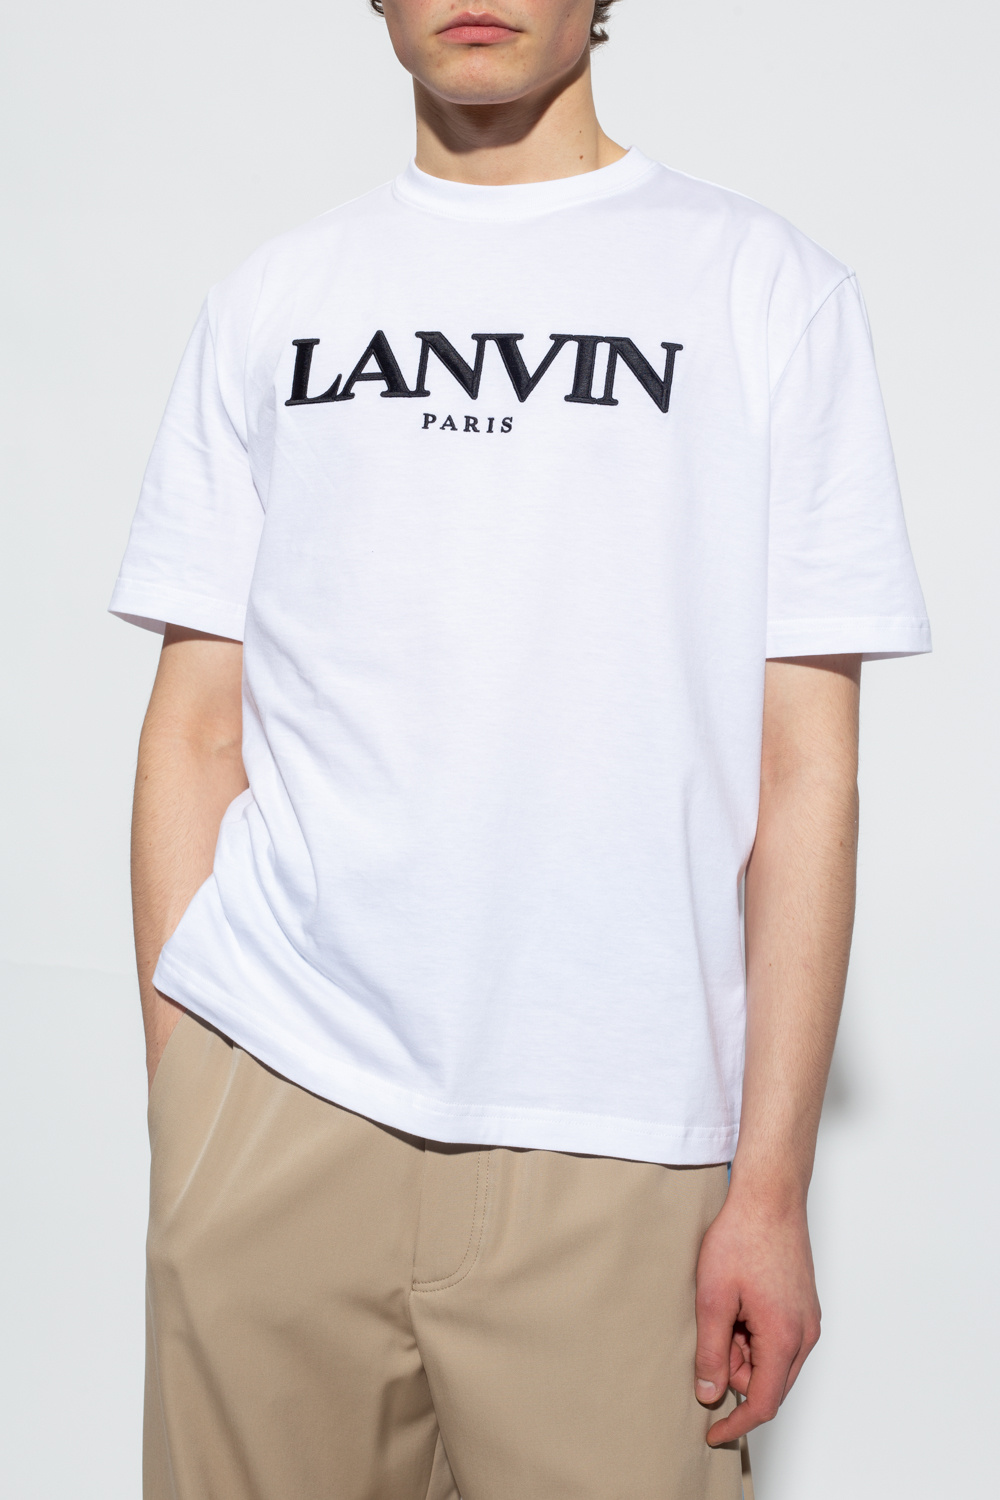 Lanvin T-shirt with logo | Men's Clothing | Vitkac